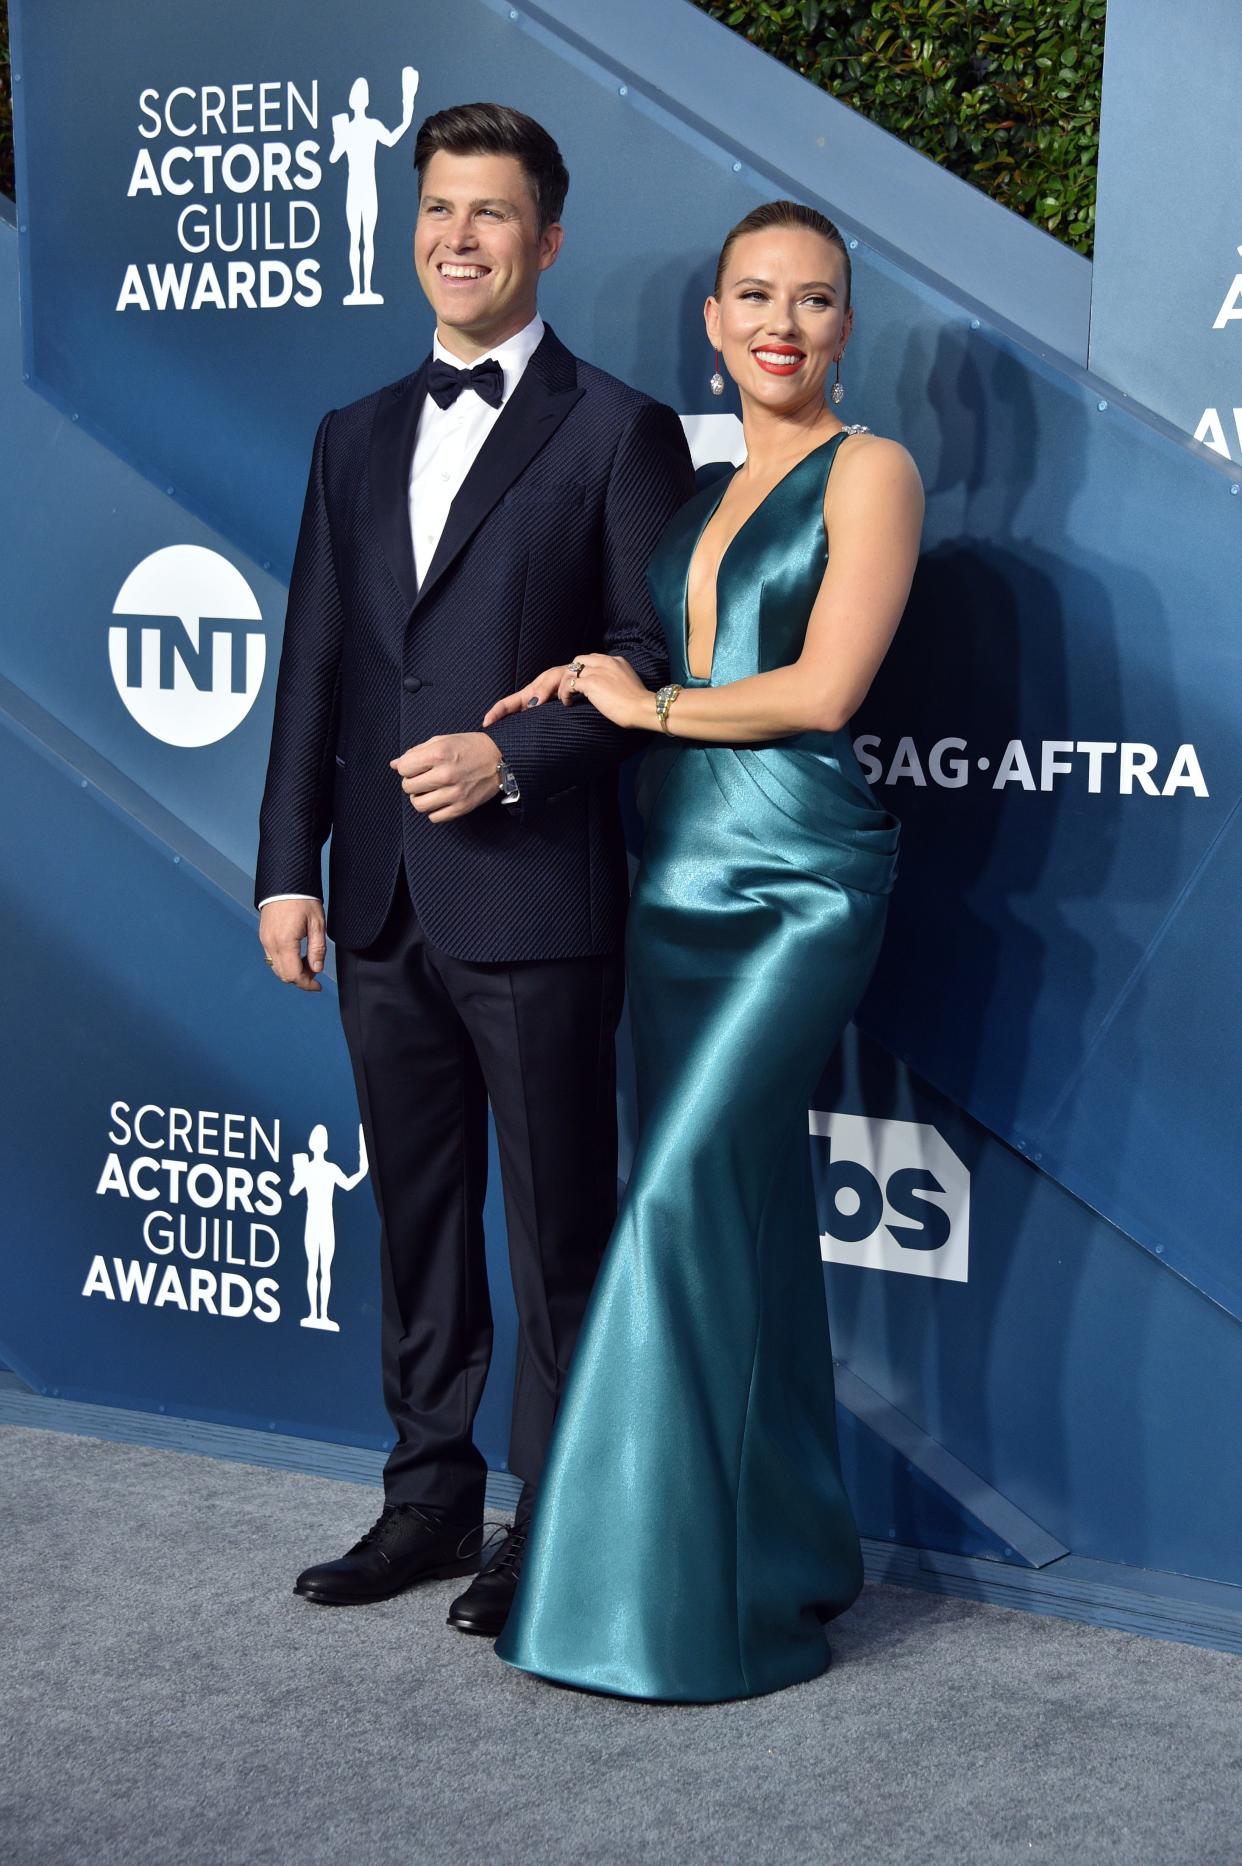 Colin Jost and Scarlett Johansson